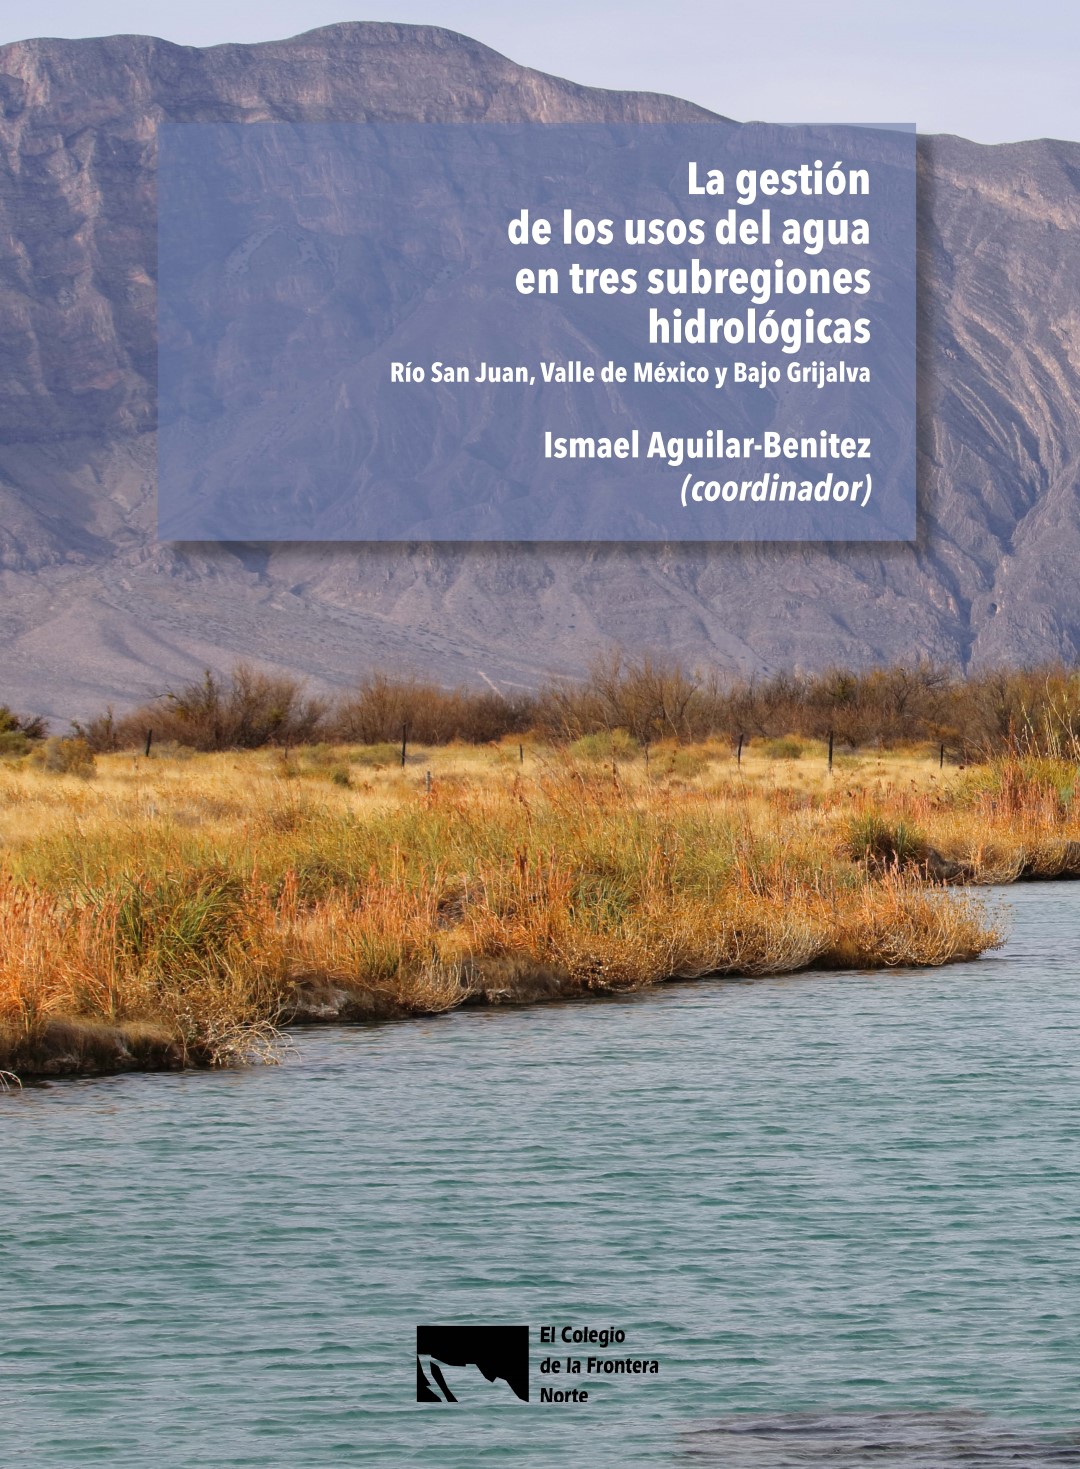 La gestión de los usos del agua en tres subregiones hidrológicas: Río San Juan, Valle de México y Bajo Grijalva